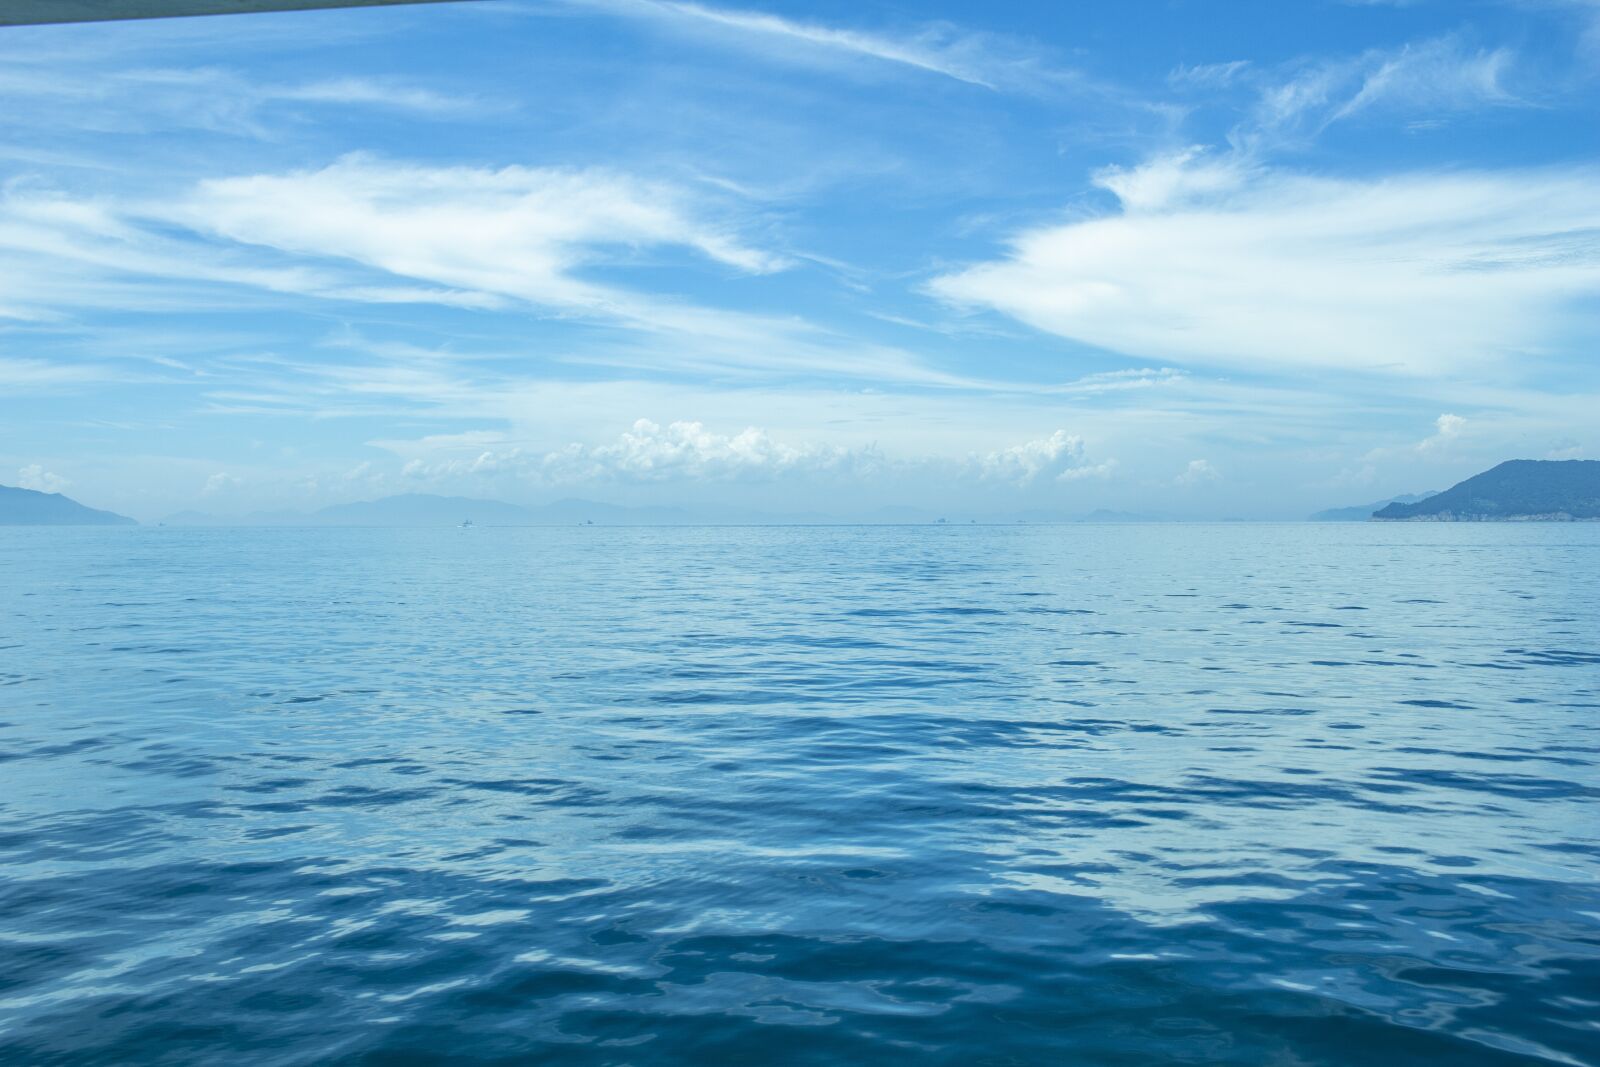 Canon EOS 100D (EOS Rebel SL1 / EOS Kiss X7) sample photo. Sea, sky, water photography